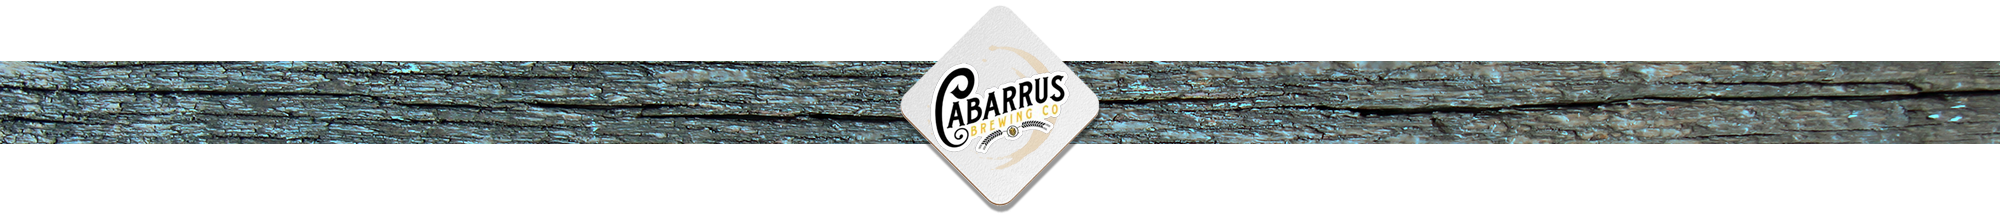 Cabarrus Brewing